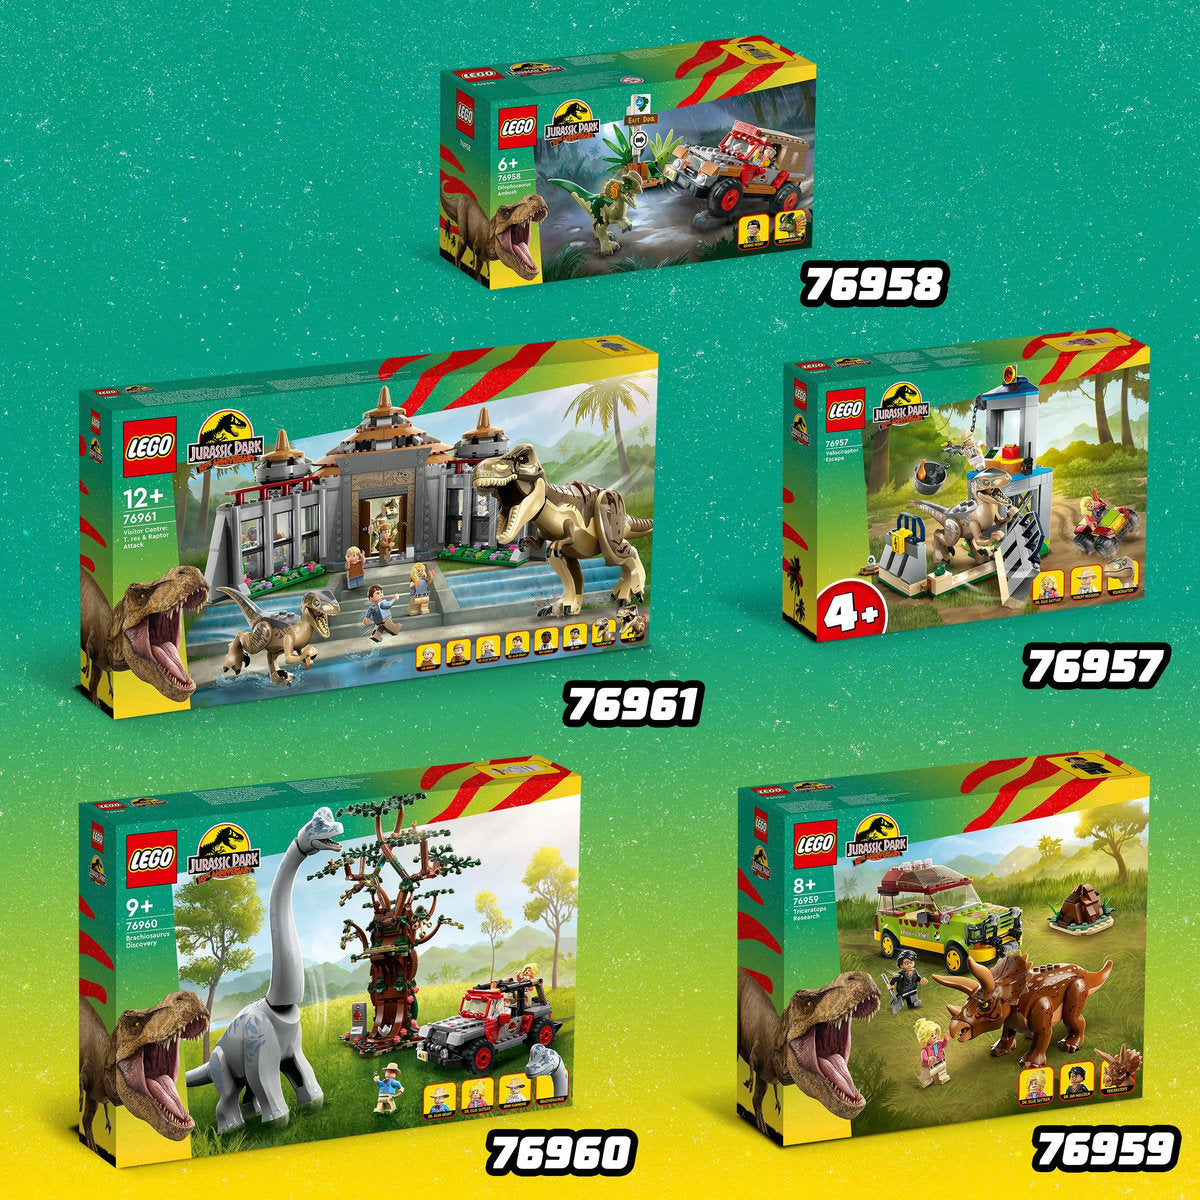 DESCOPERIREA DINOZAURULUI BRACHIOSAURUS - LEGO JURASSIC WORLD - LEGO (76960)